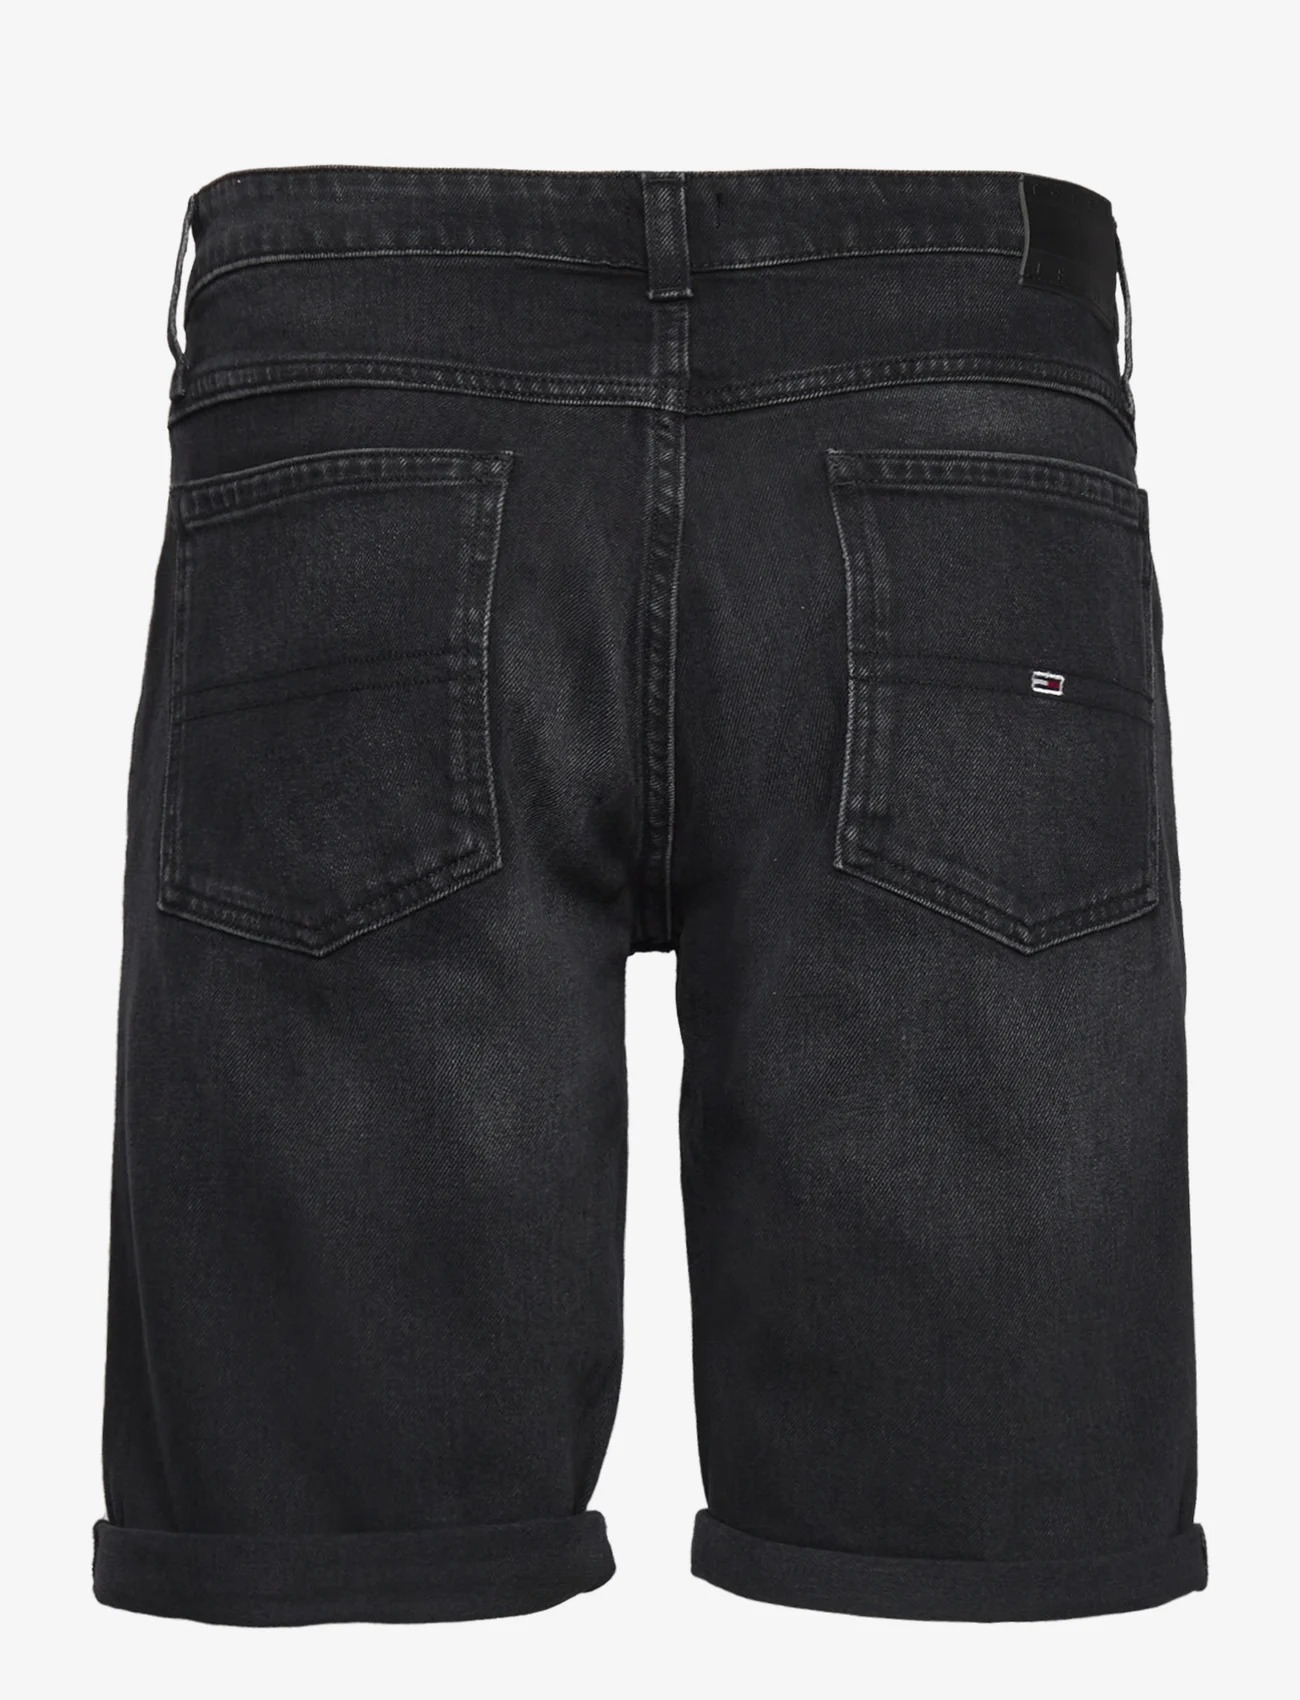 Tommy Jeans - RONNIE SHORT BH0188 - džinsiniai šortai - denim black - 1